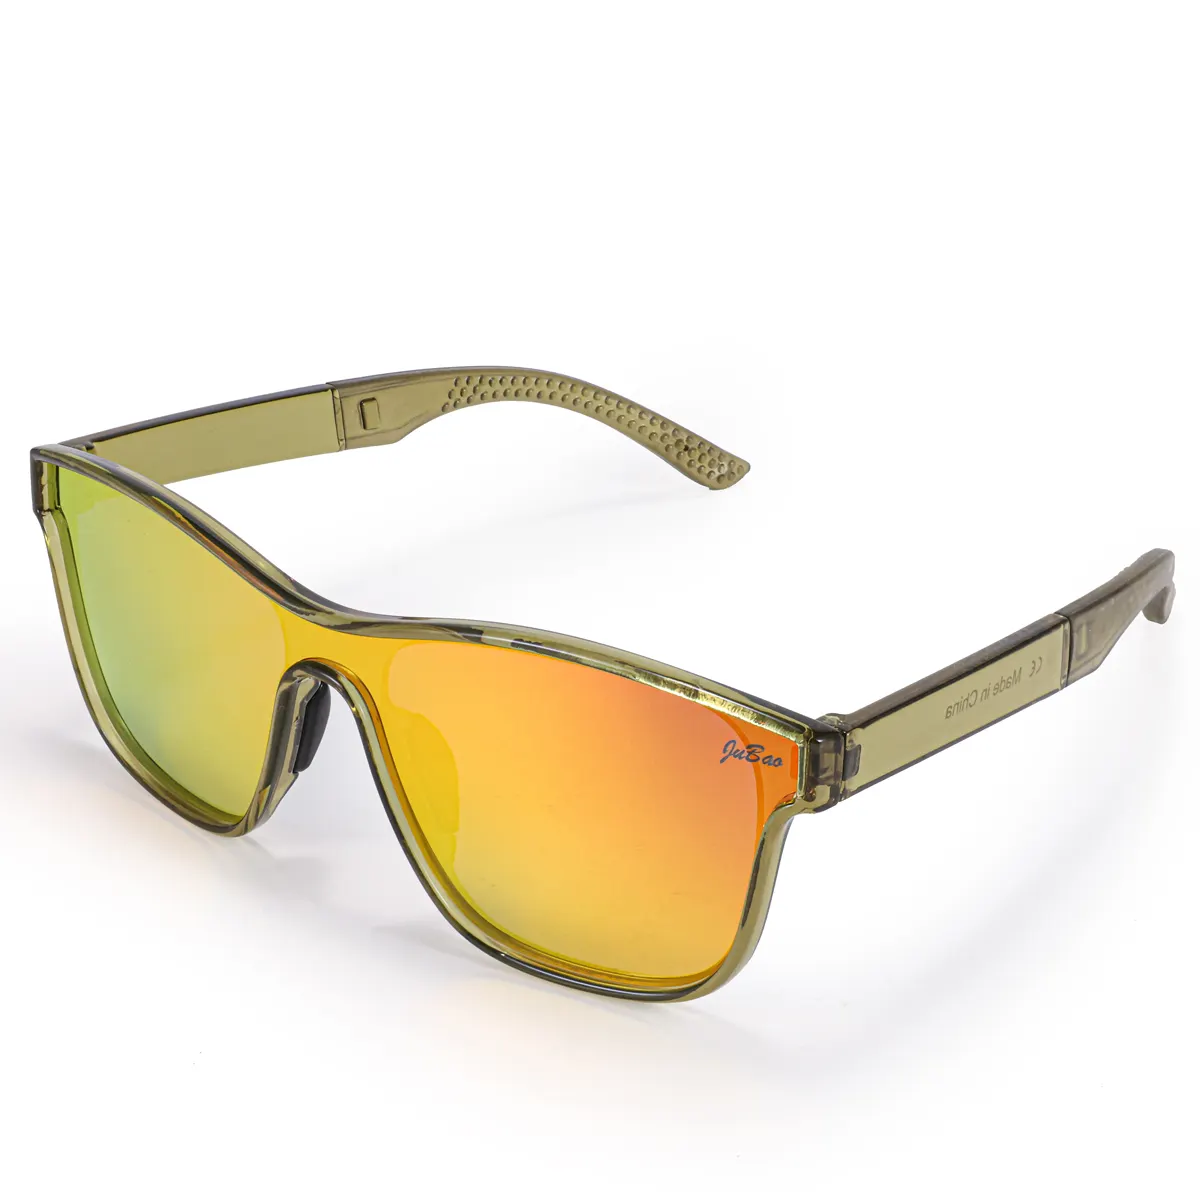 نظارات شمسية رياضية مستقطبة ماركة HUBO 508 طراز UV400 نظارات متوافقة مع الطرق المتعرجة للركض والصيد وركوب الدراجات والقيادة نظارات rockbros للرجال والنساء